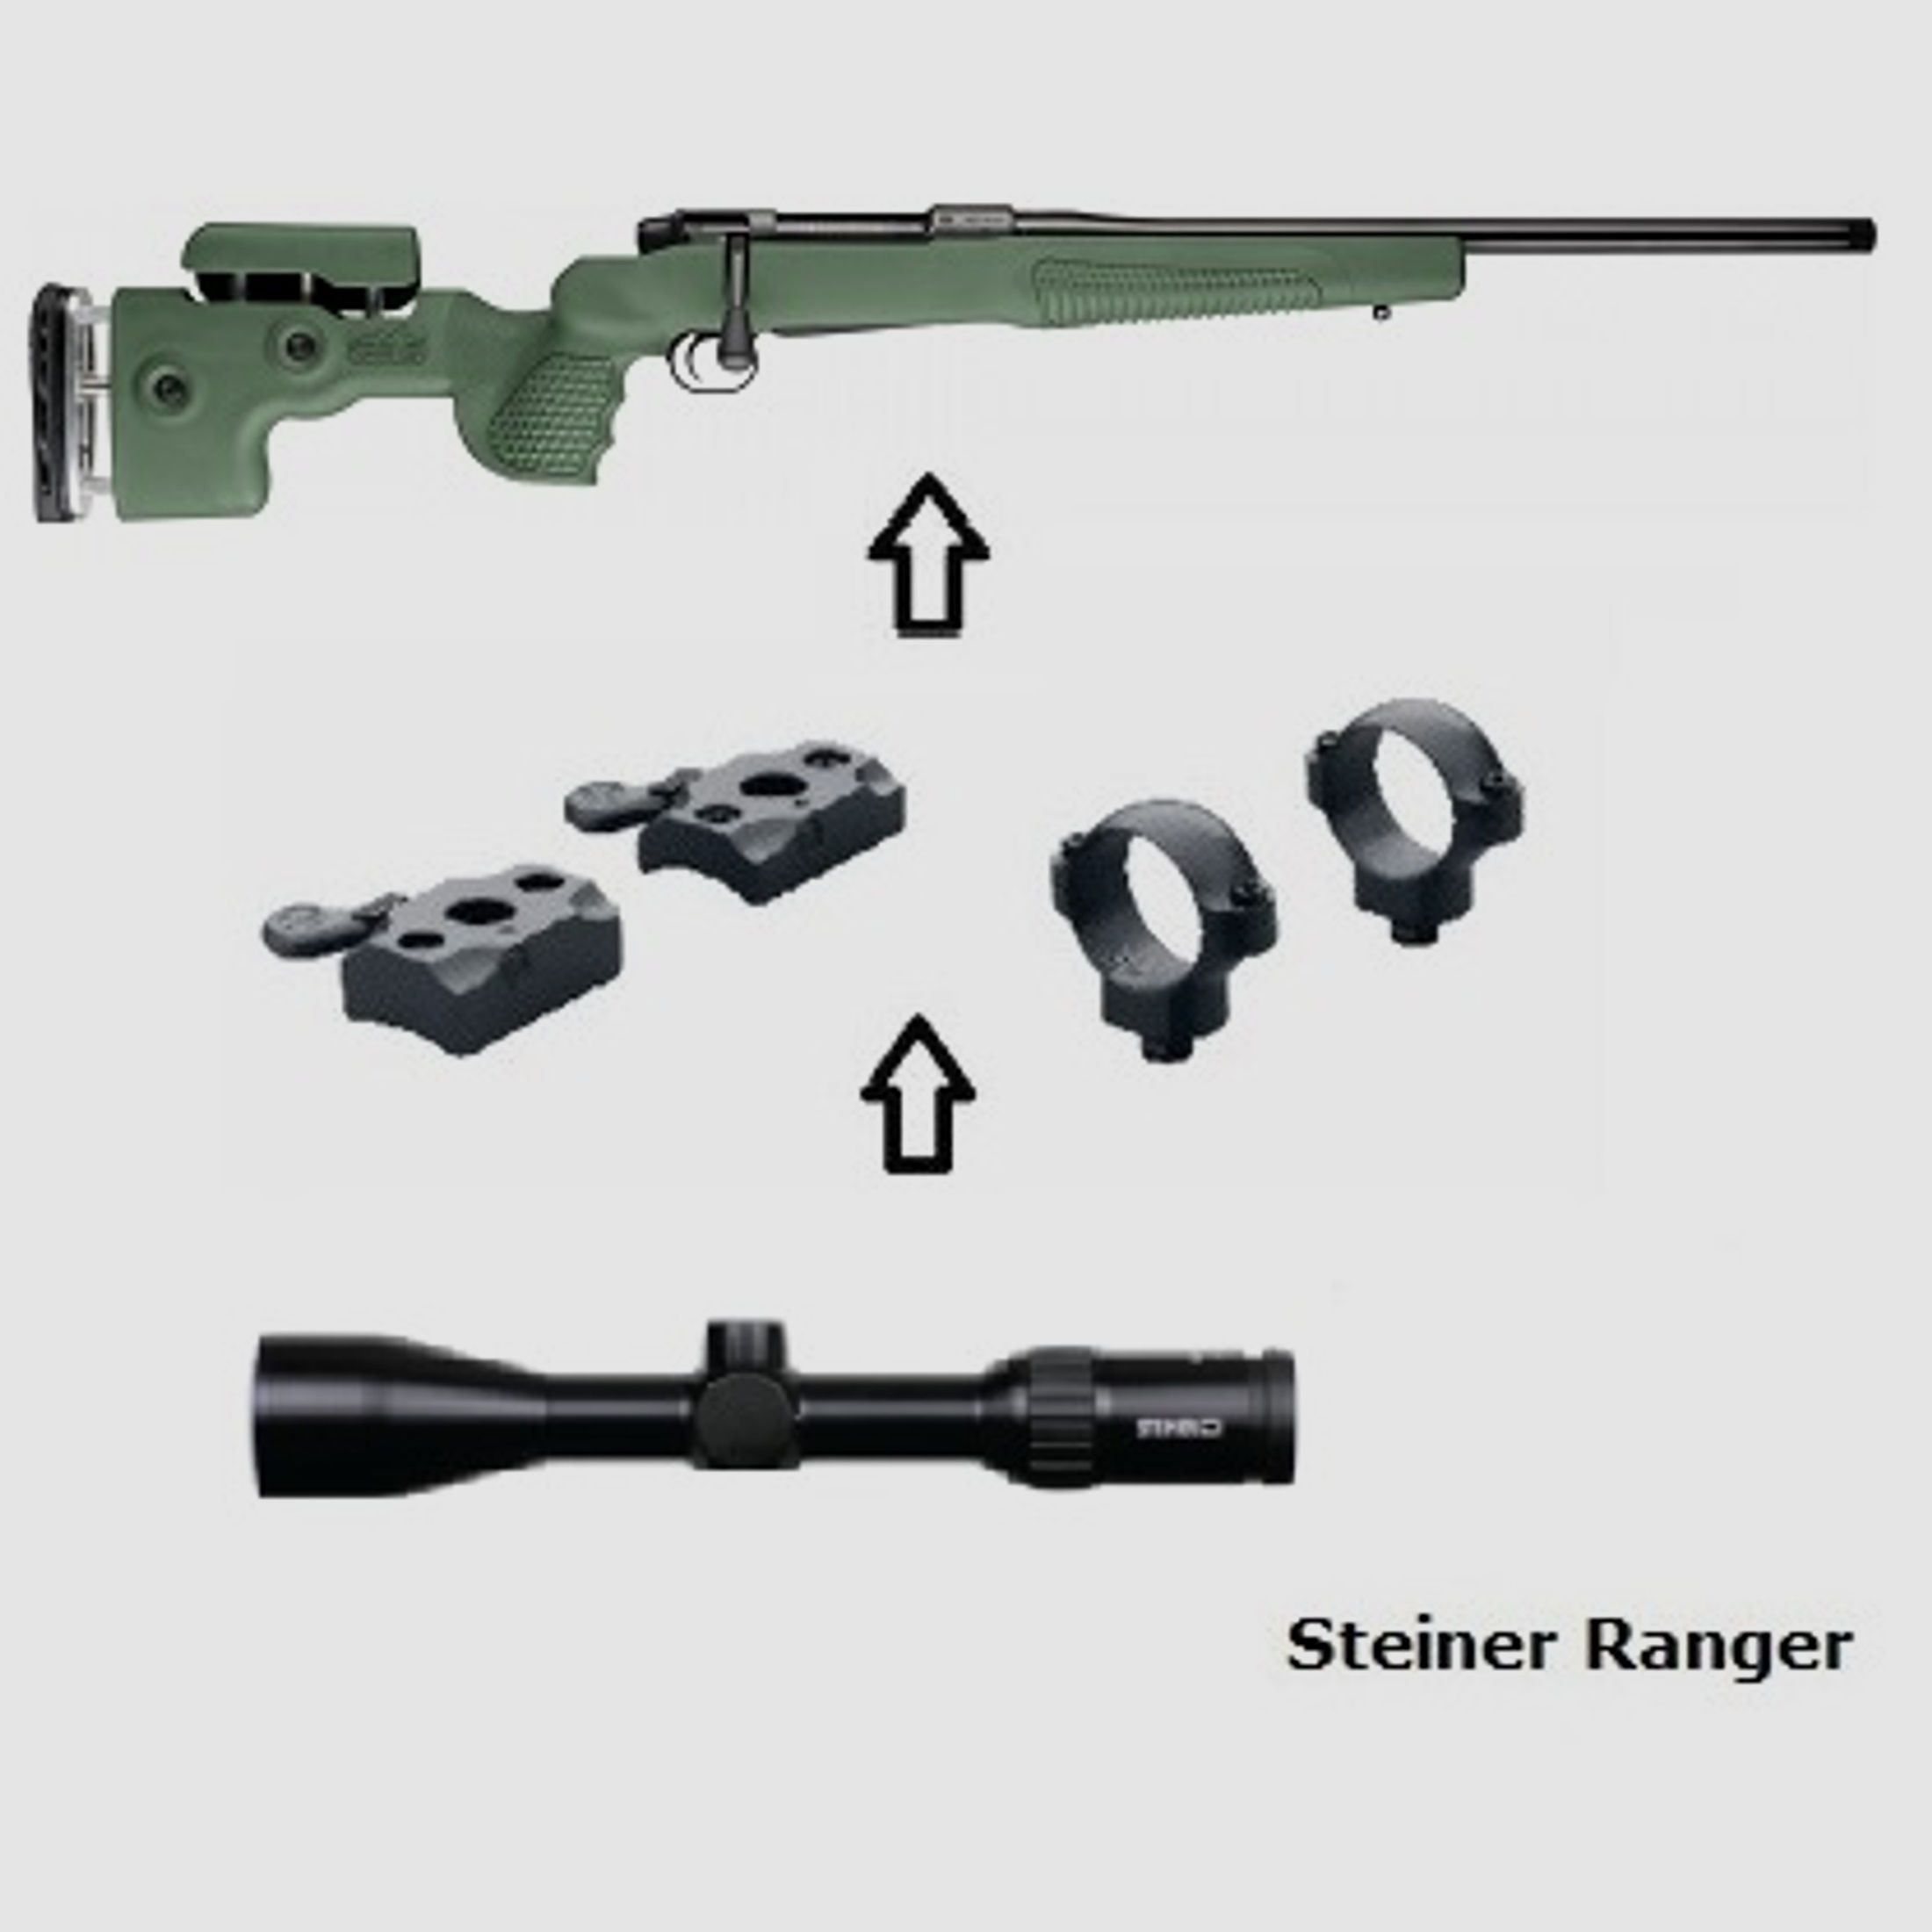 Mauser M18 Fenris + Steiner Ranger 4 2,5-10x50 + Montage + ... Komplettpaket